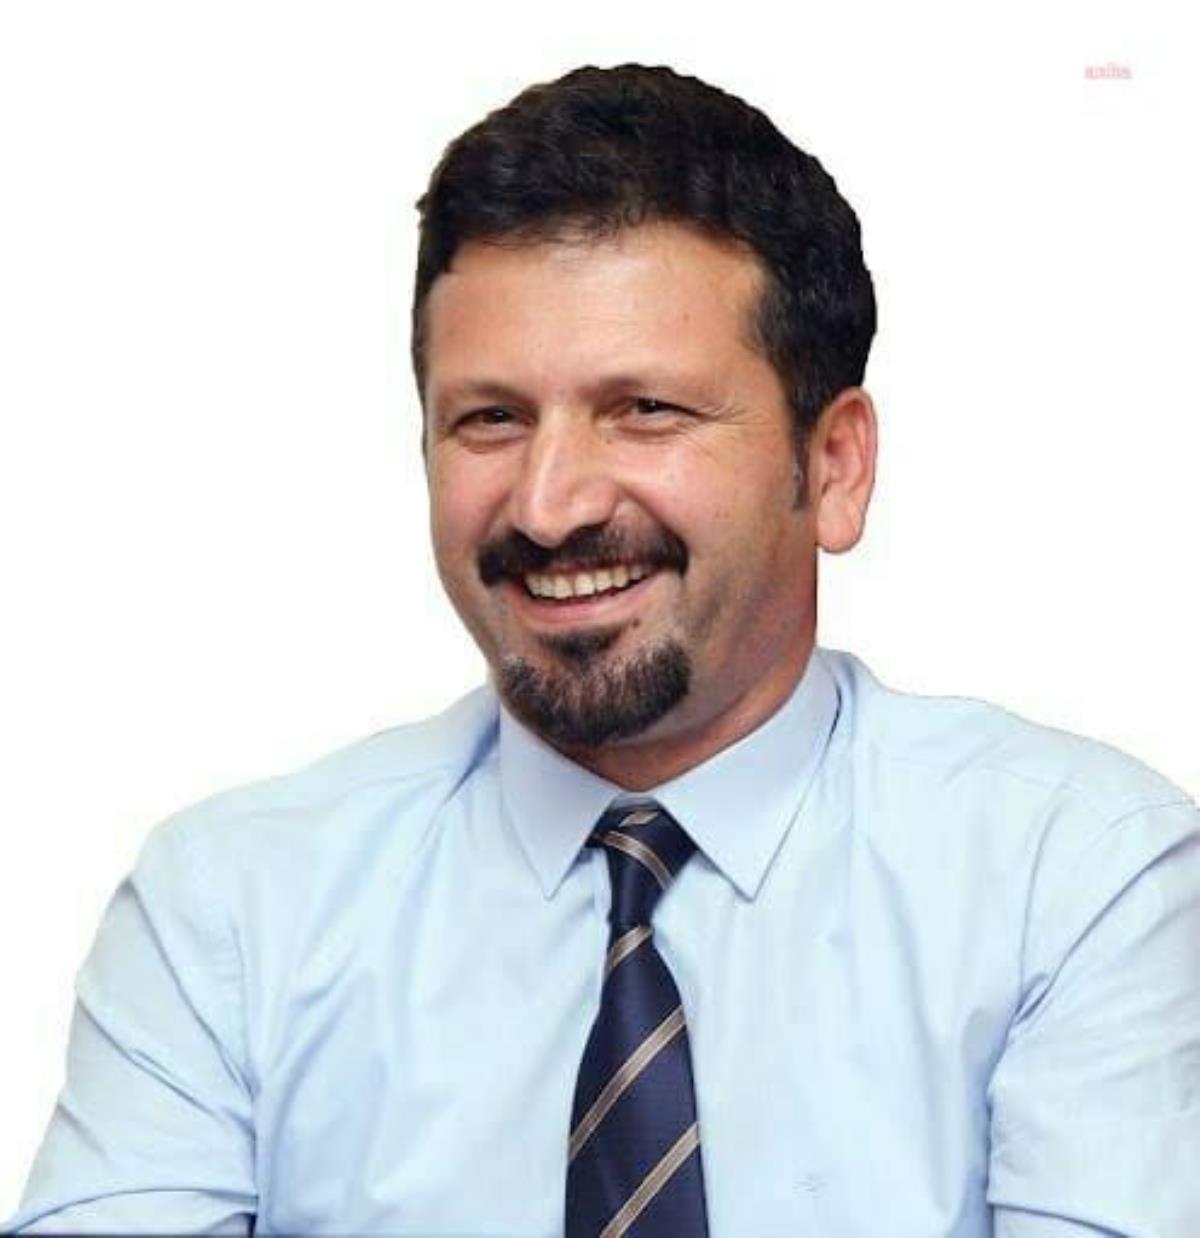 Tvhb Lideri Prof. Dr. Arslan'dan Veterinerlere '29 Nisan Dünya Veteriner Doktorlar Günü'nde Ankara'da Buluşma Daveti